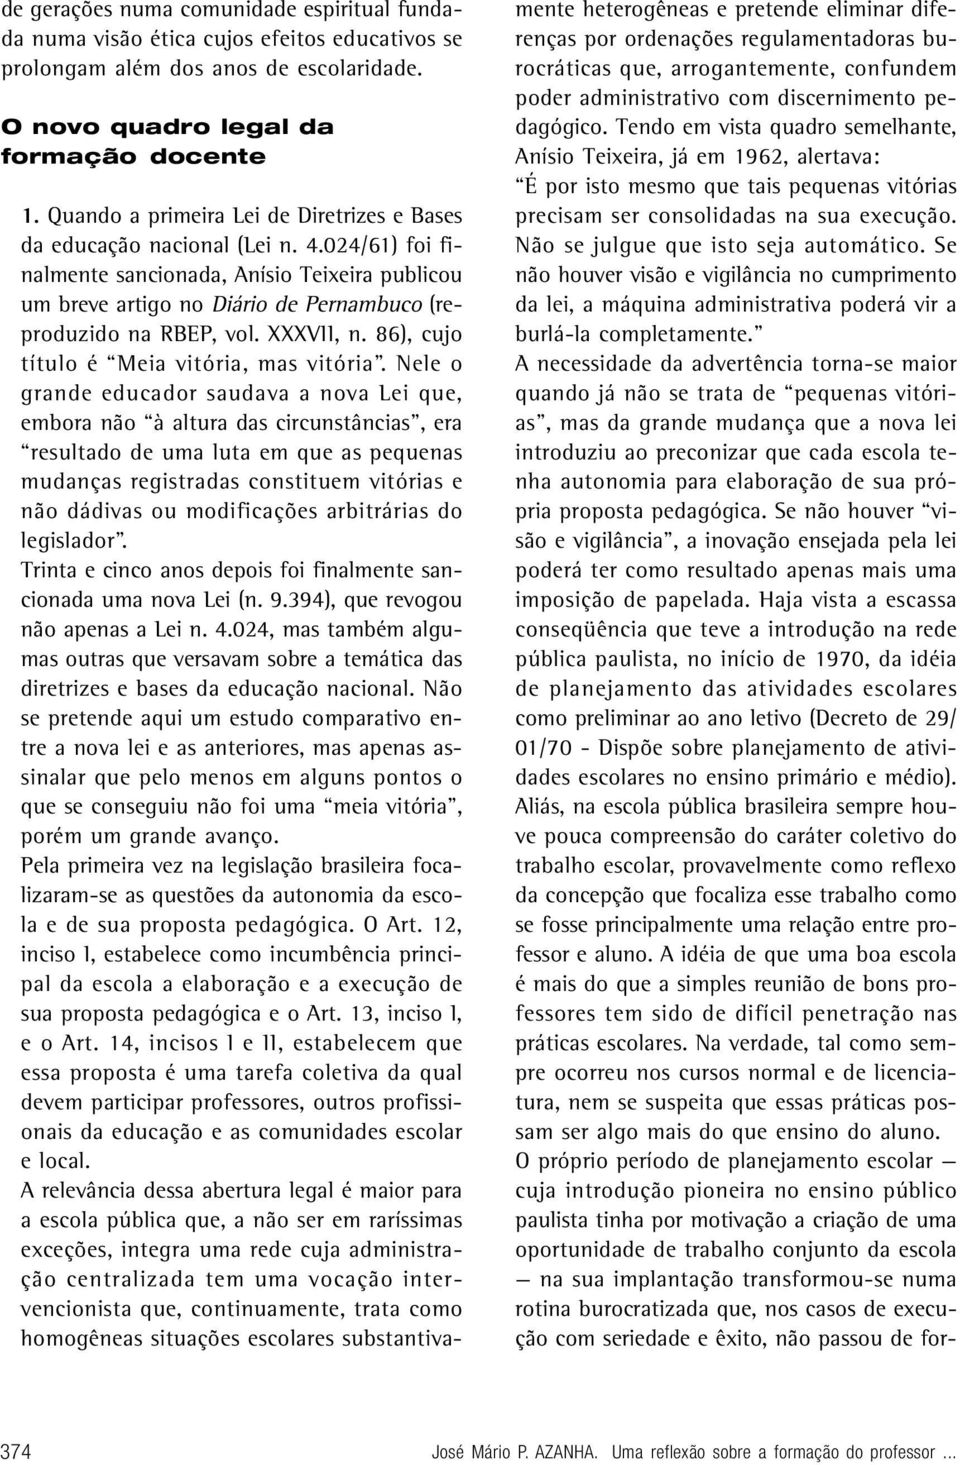 024/61) foi finalmente sancionada, Anísio Teixeira publicou um breve artigo no Diário de Pernambuco (reproduzido na RBEP, vol. XXXVII, n. 86), cujo título é Meia vitória, mas vitória.